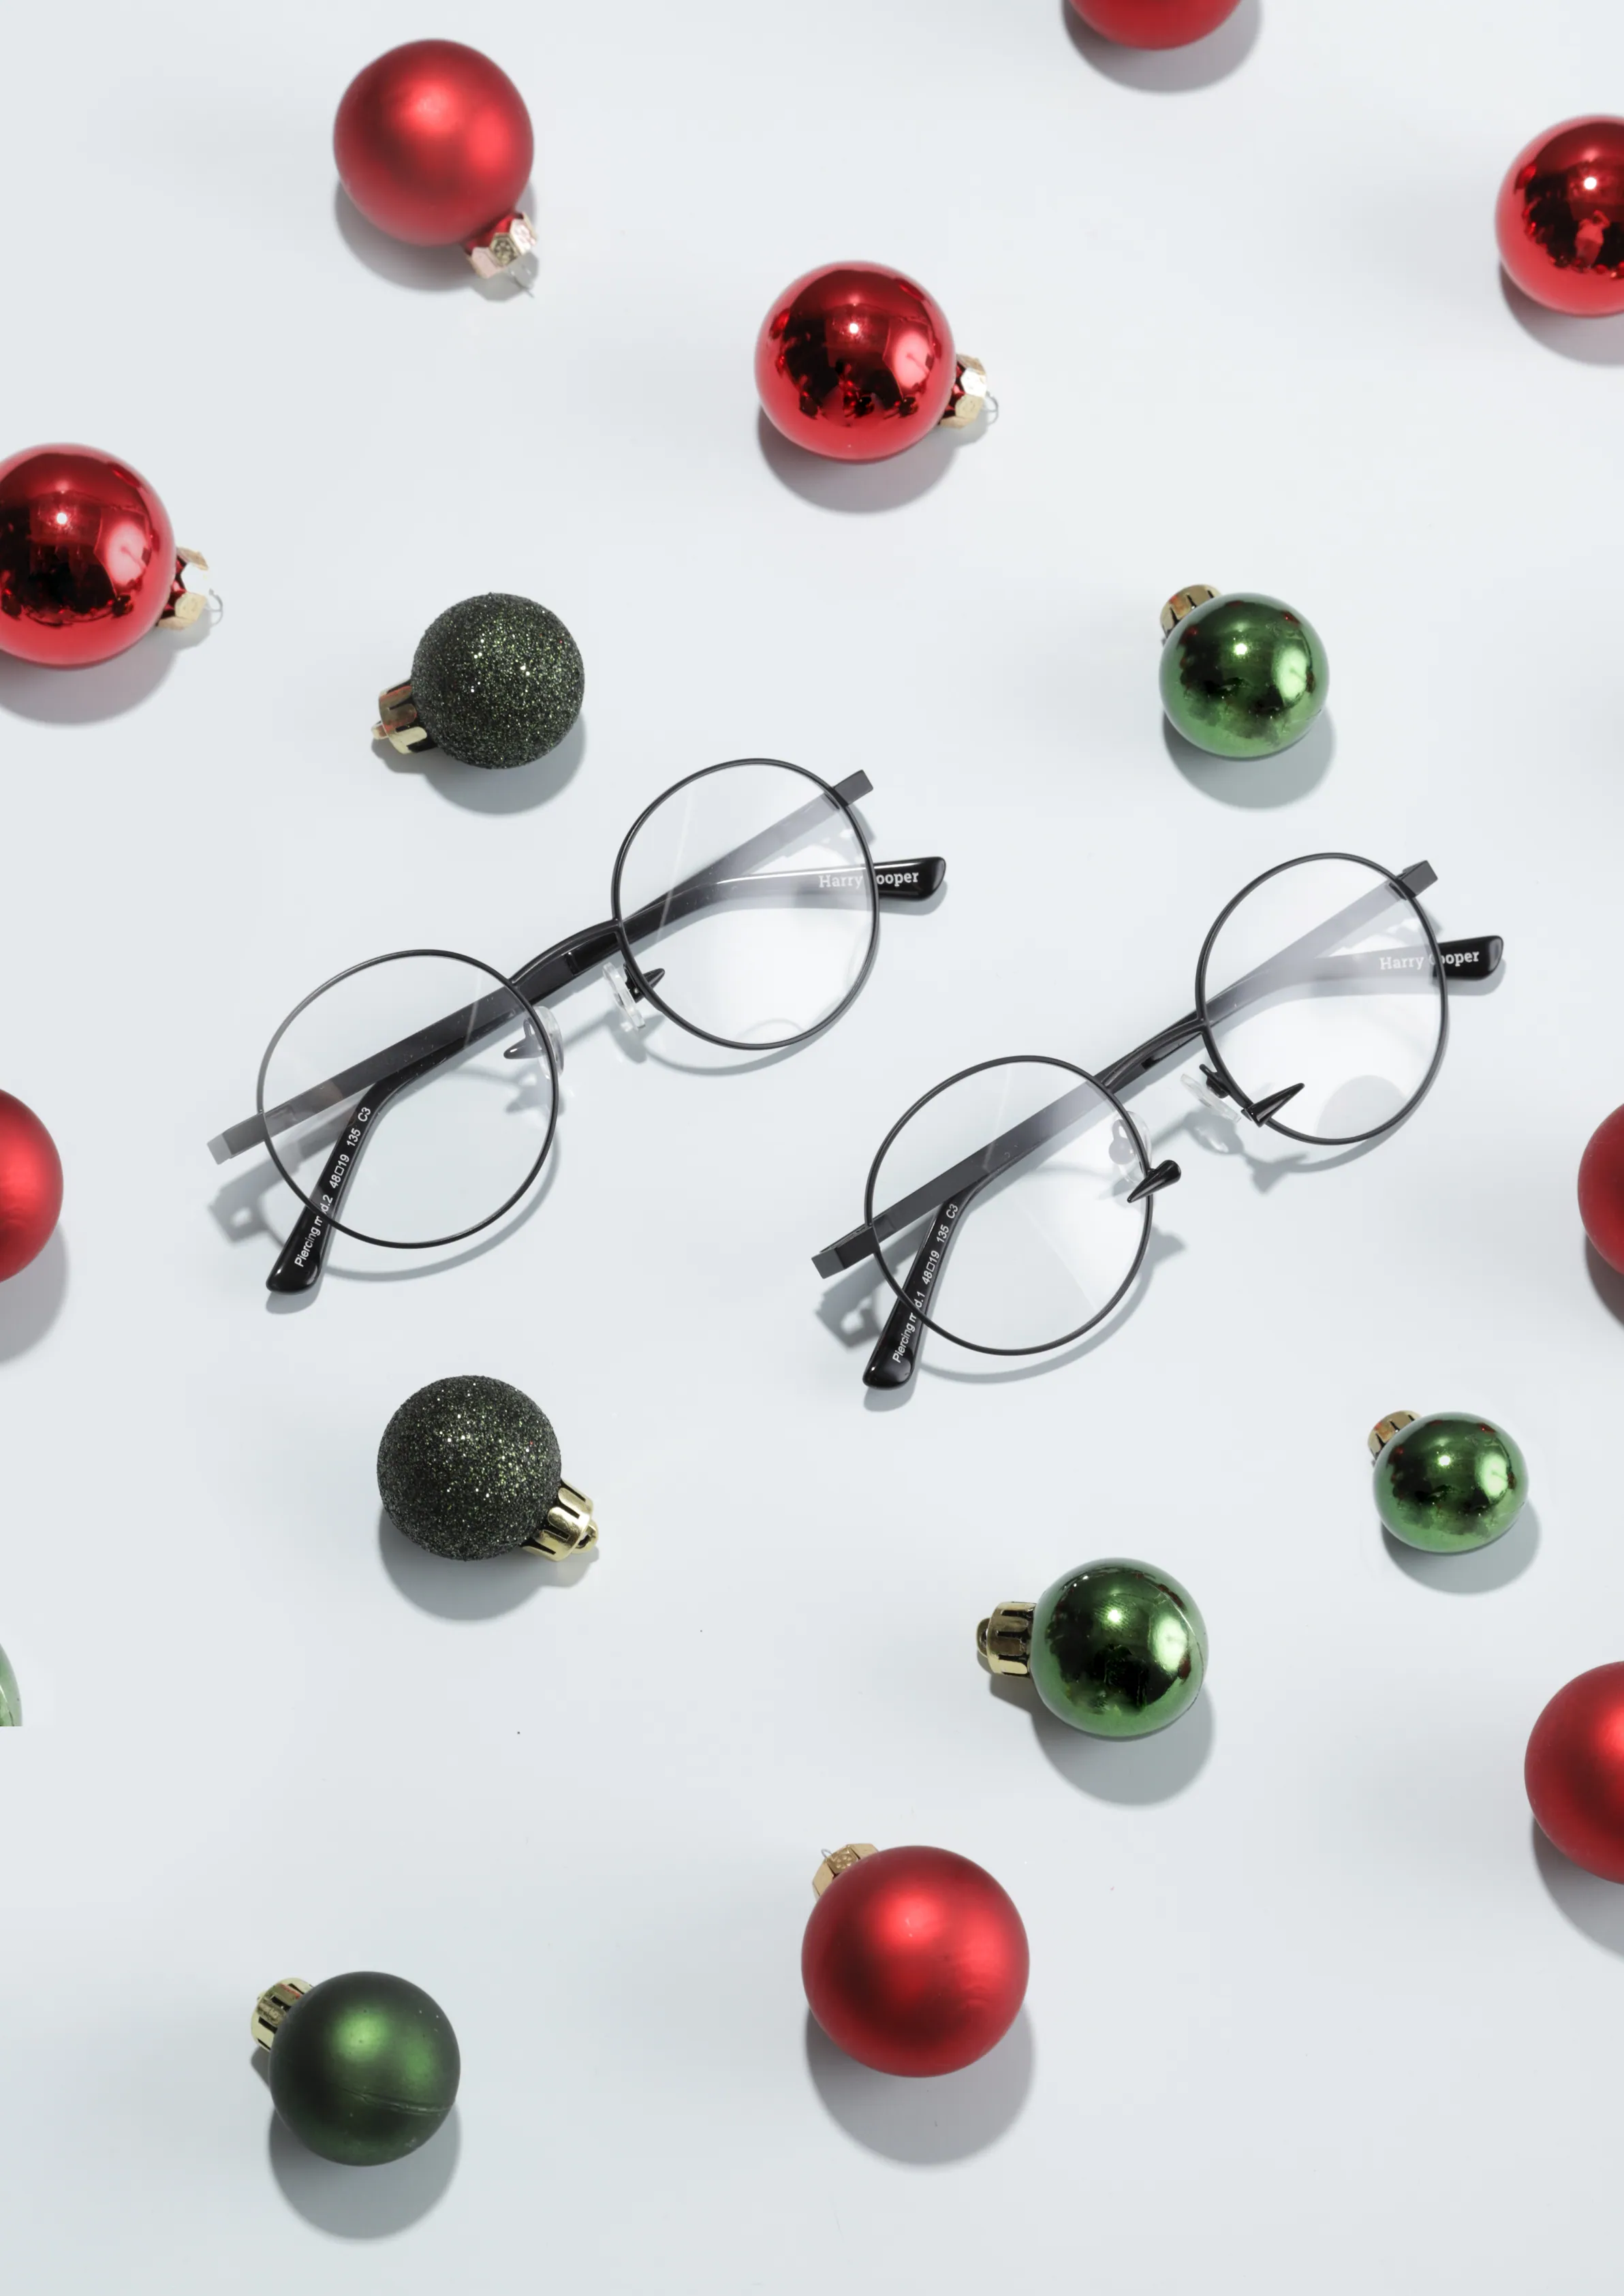 Оптика Harry Cooper - стильные очки по доступной цене